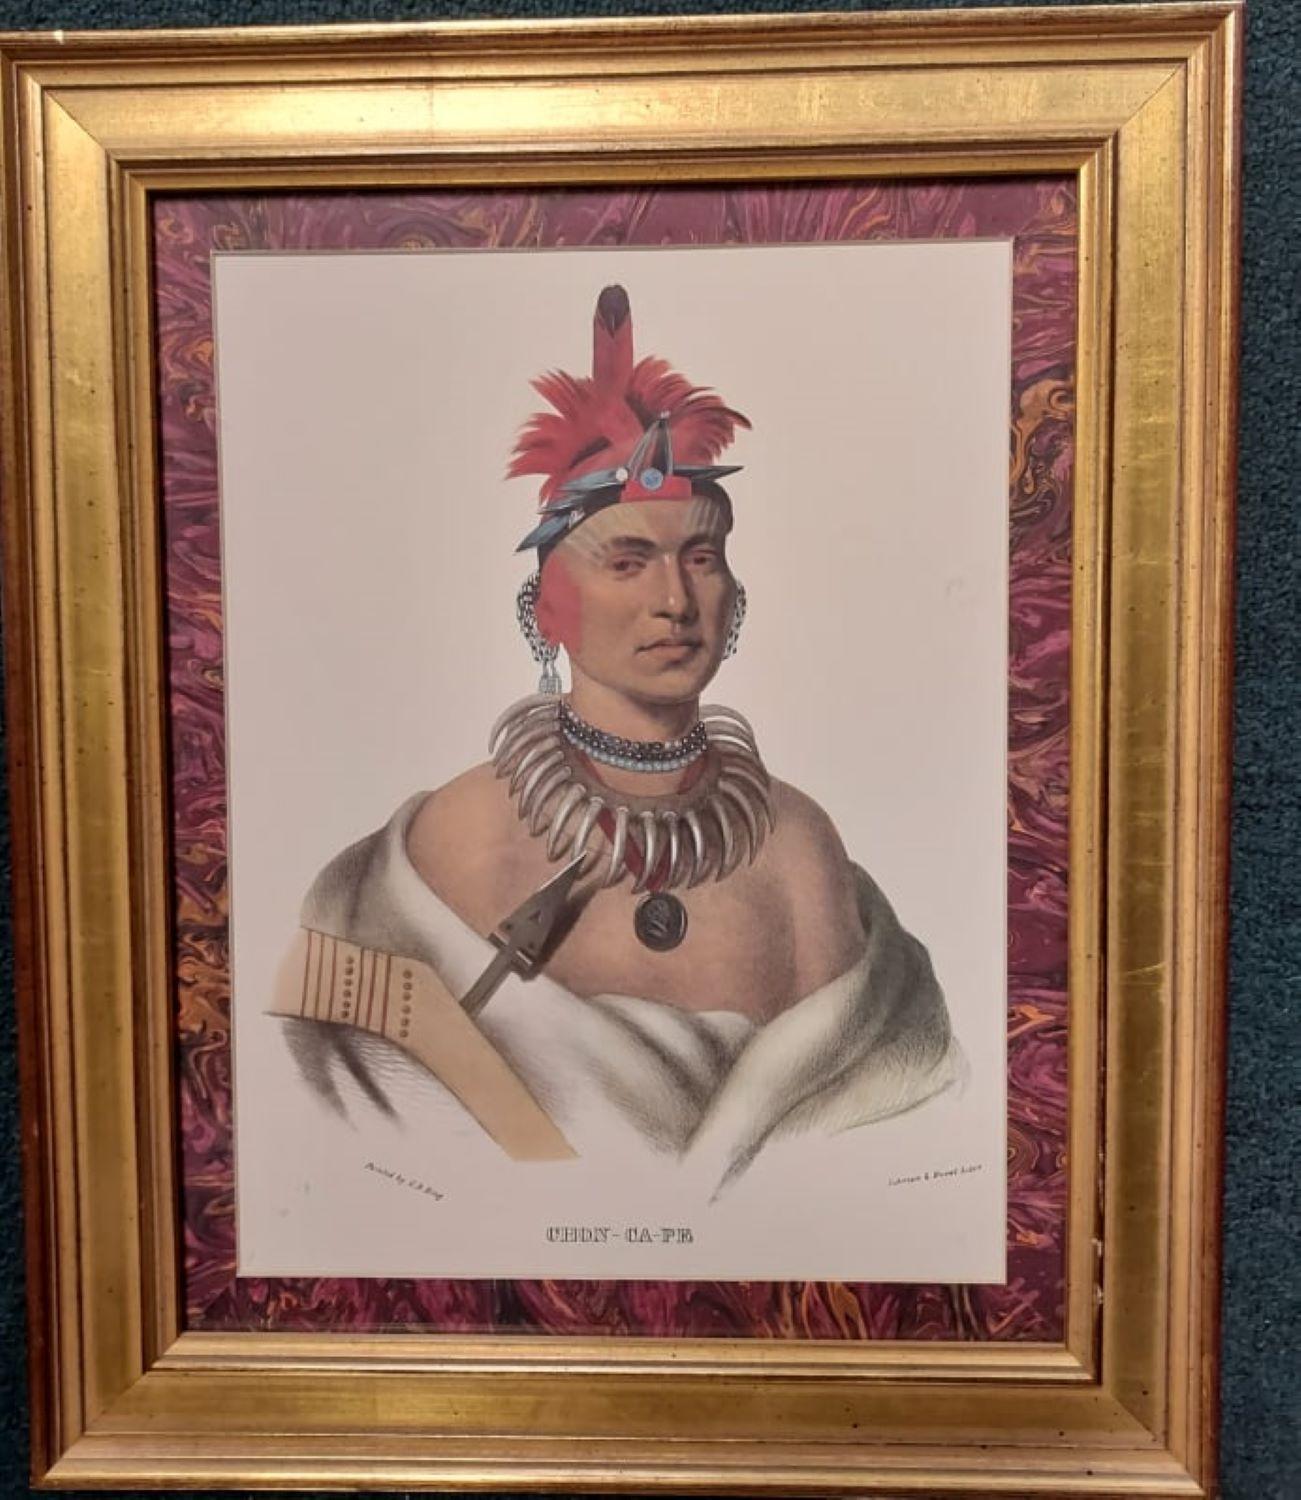 Chono Ca Pe, An Ottoe chief, 